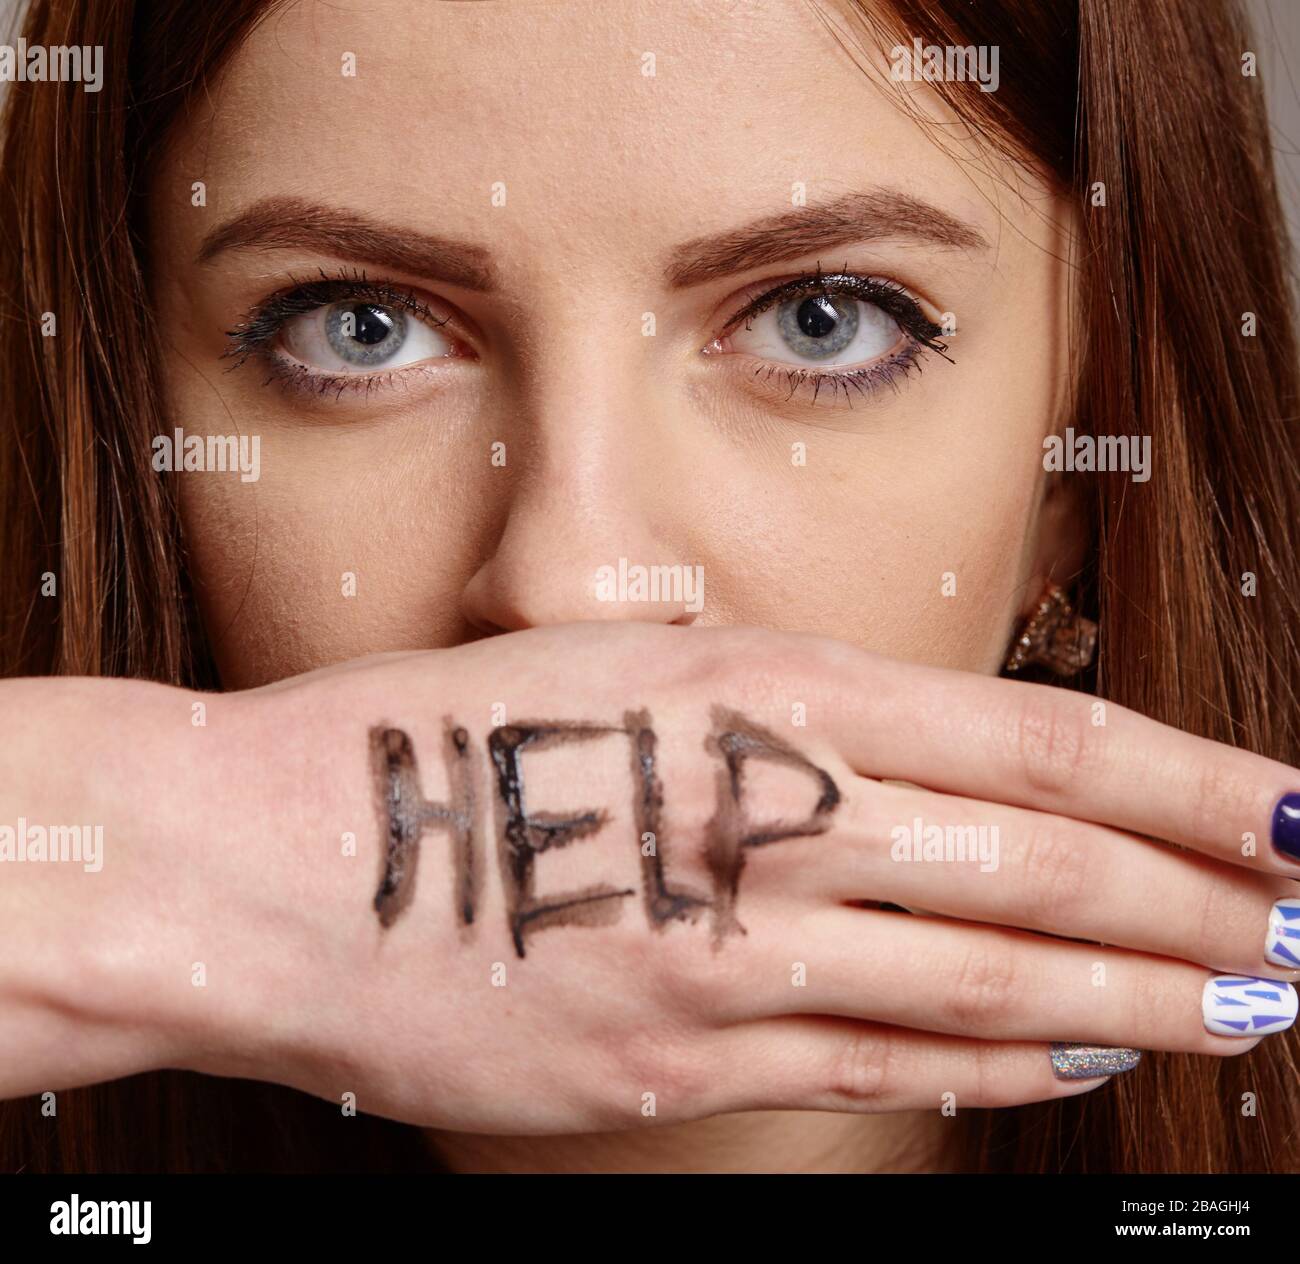 Aiutami il ritratto psicologico delle grida della donna per aiuto con l'iscrizione dipinta sulla sua mano. Paura, dolore, depressione concetto Foto Stock